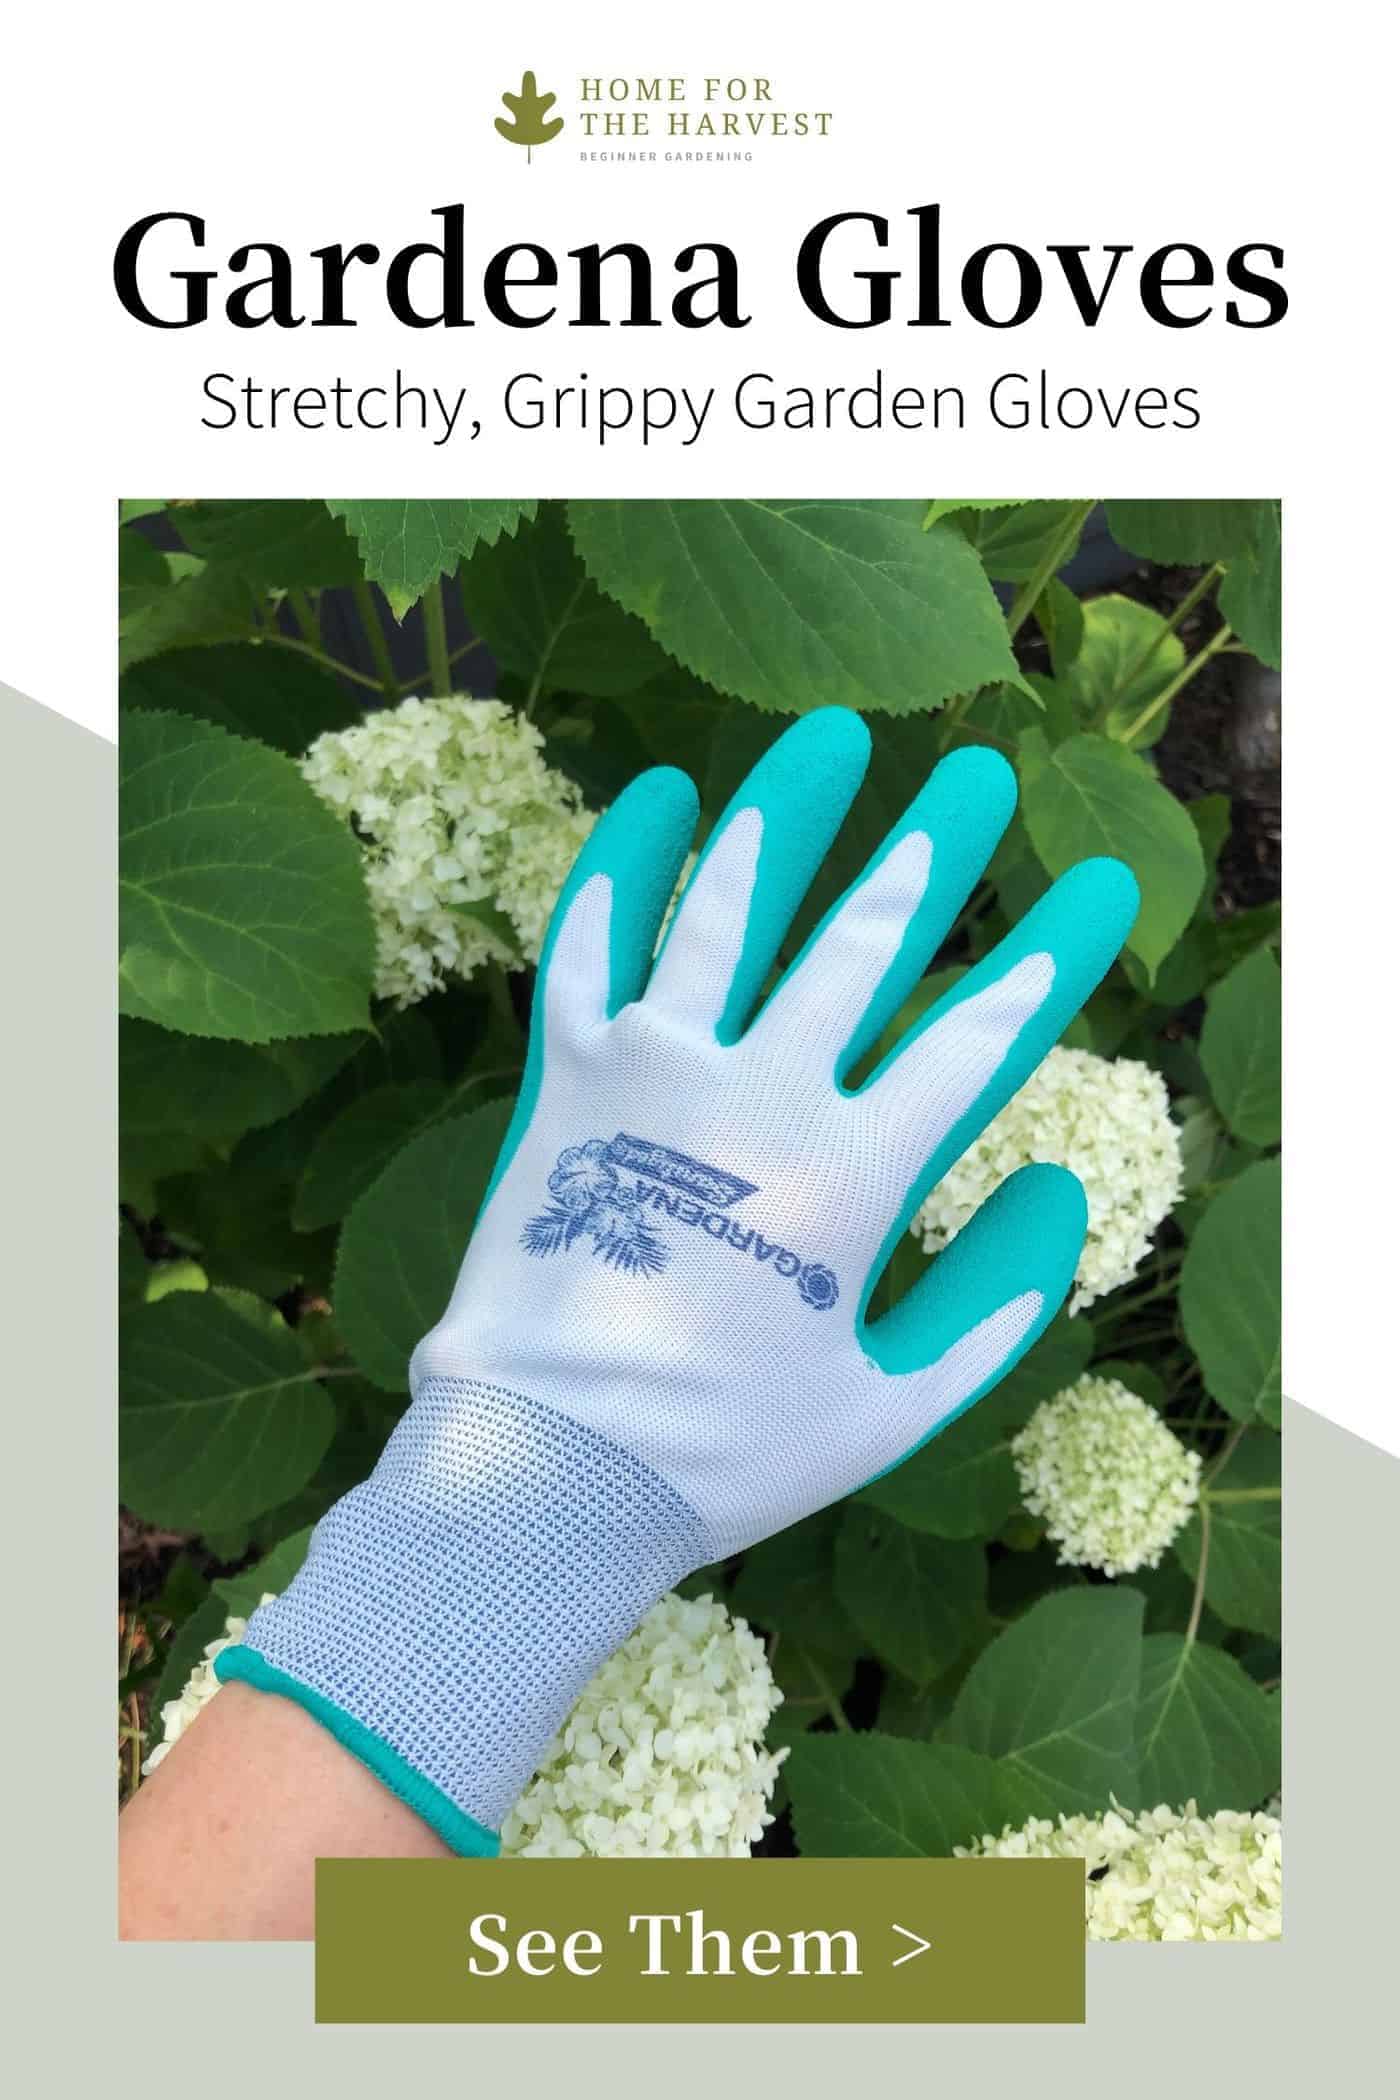 Gardena Gloves for Gardening via @home4theharvest